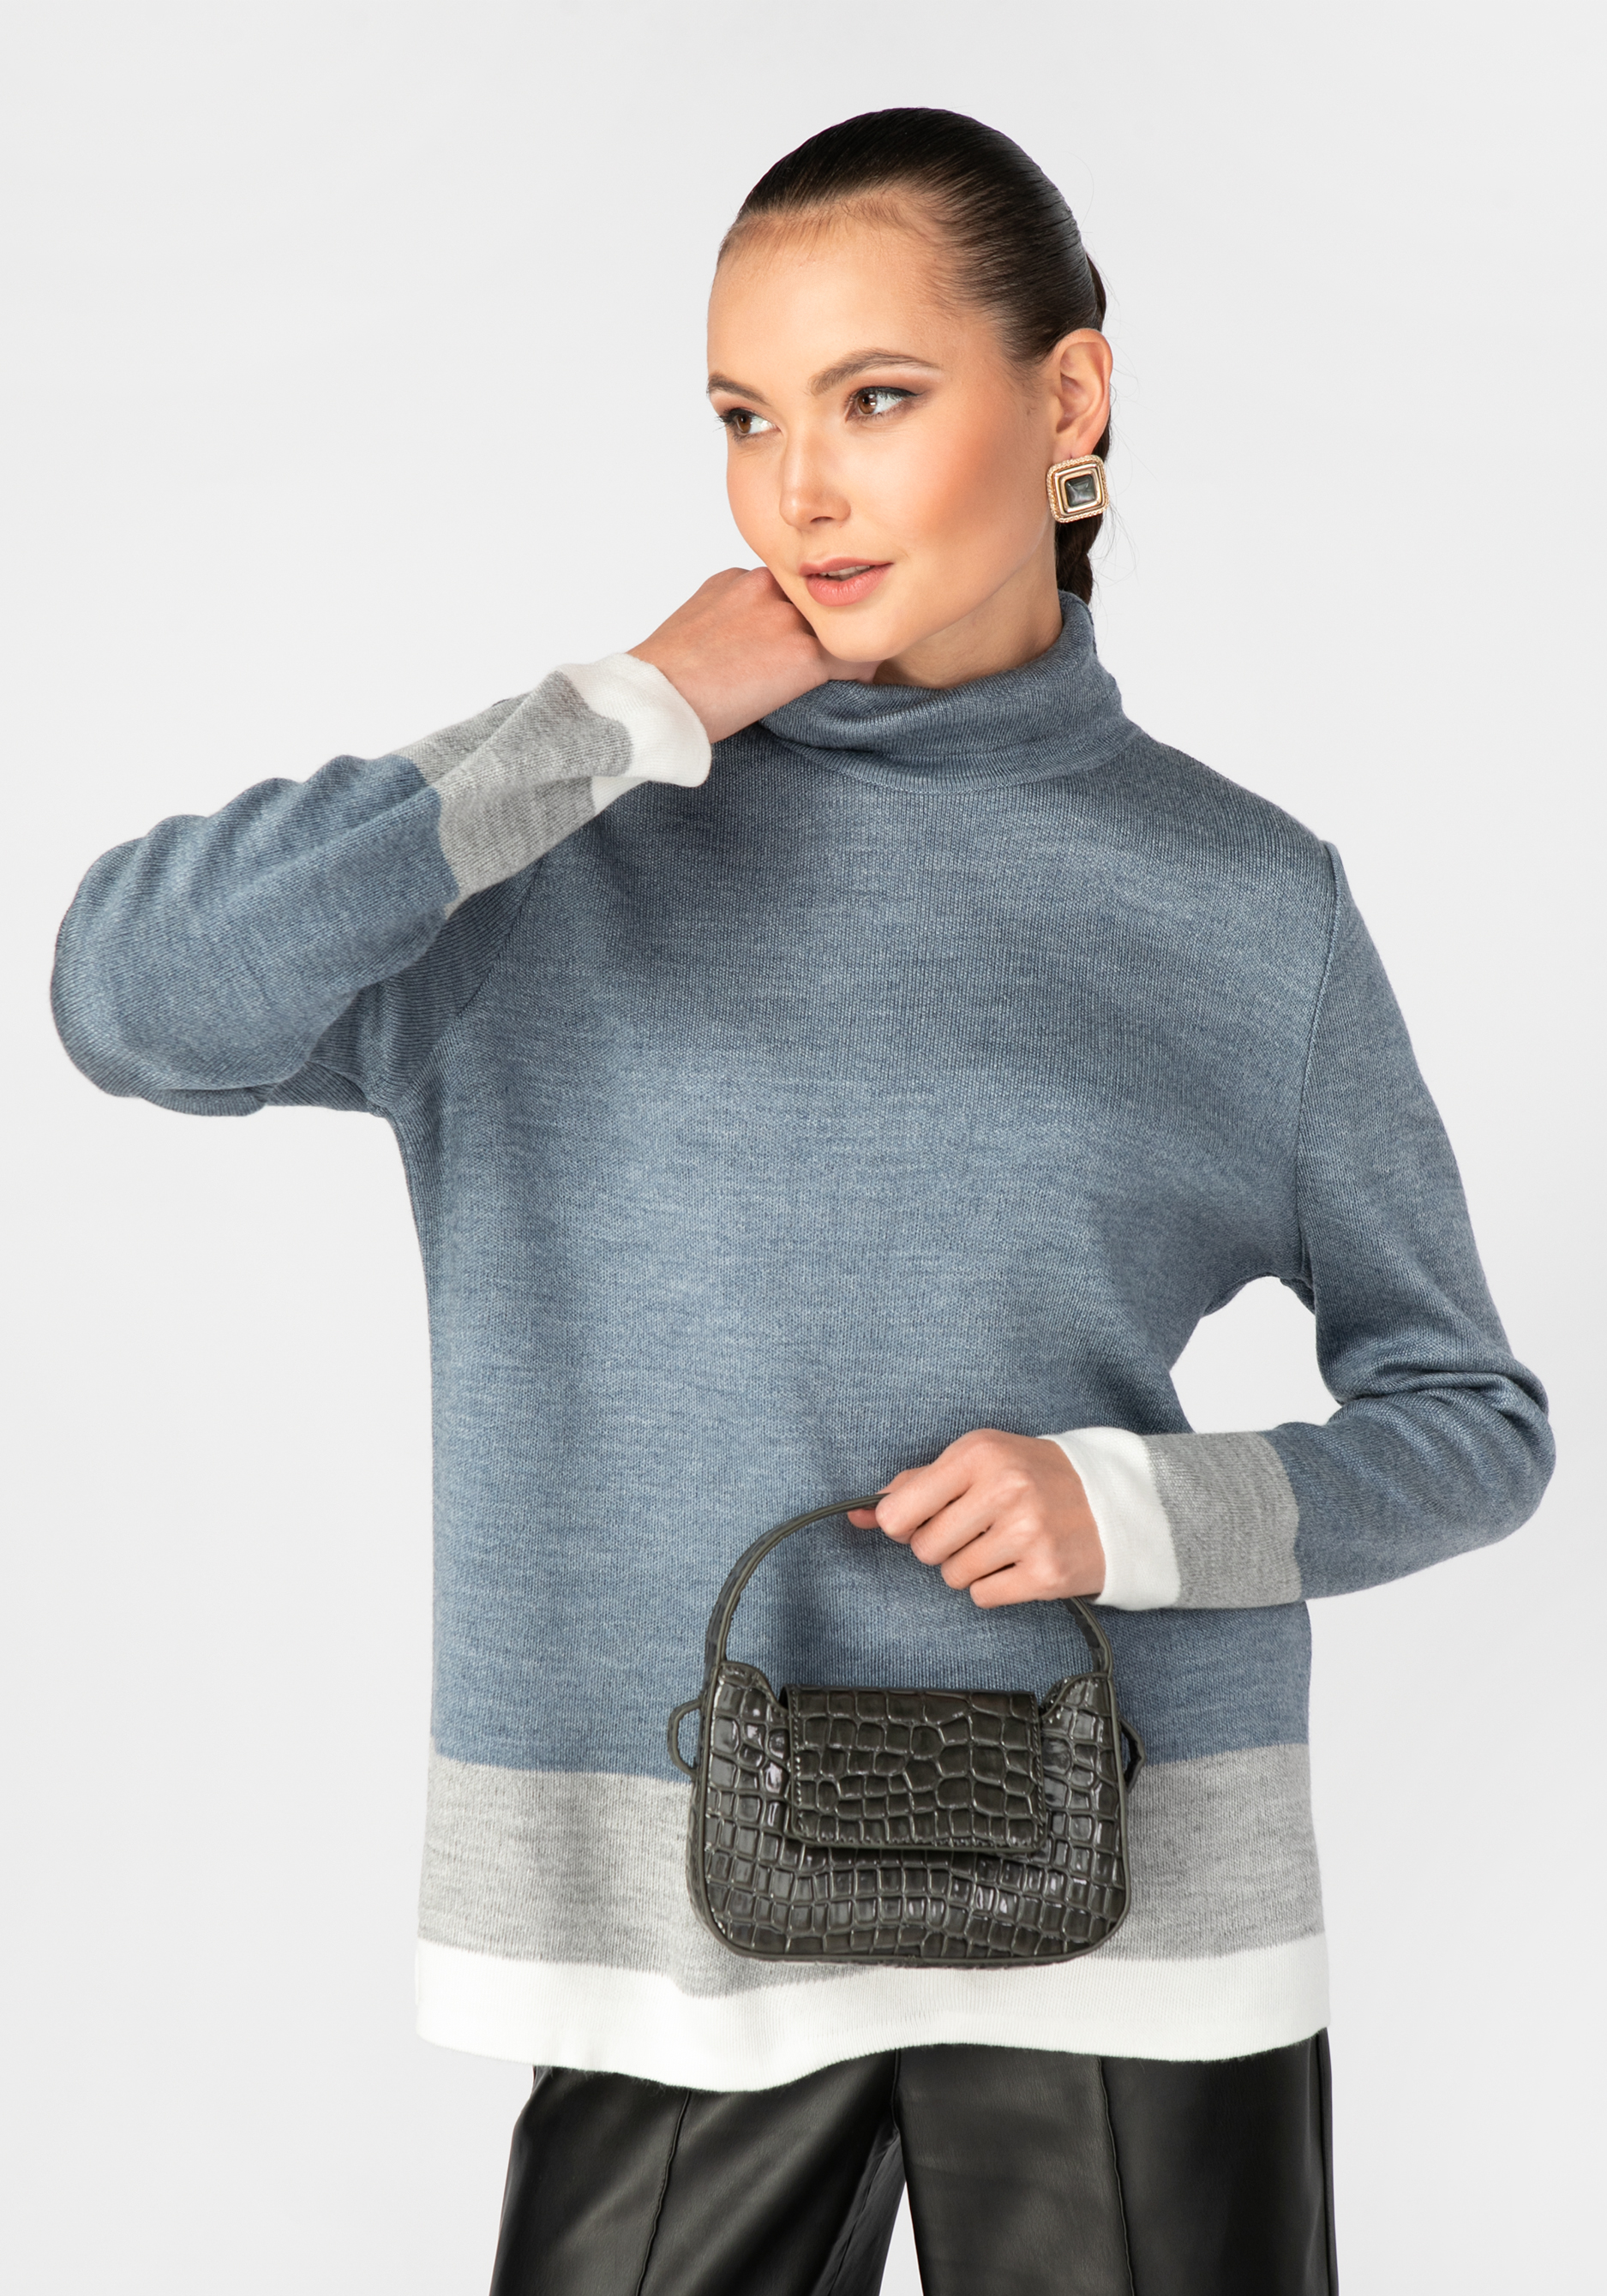 Свитер женский с контрастными полосами triol свитер косички s серый